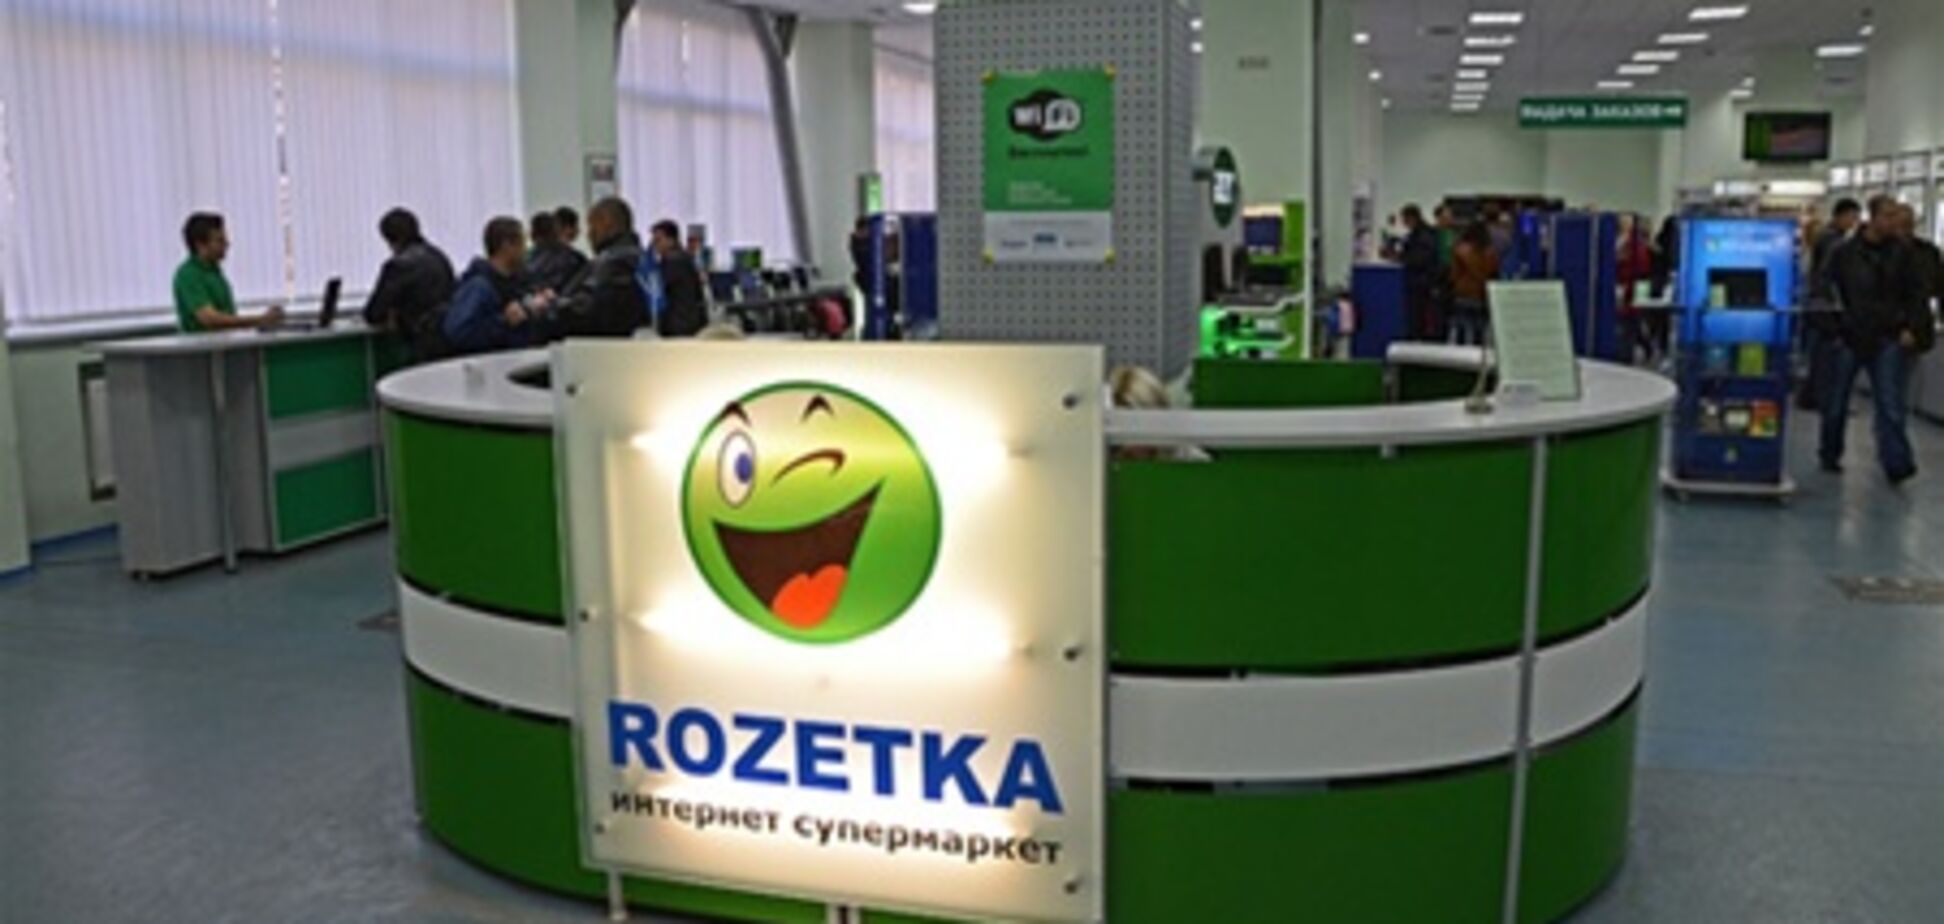 МВД: о закрытии Rozetka.ua мы ничего не знаем  